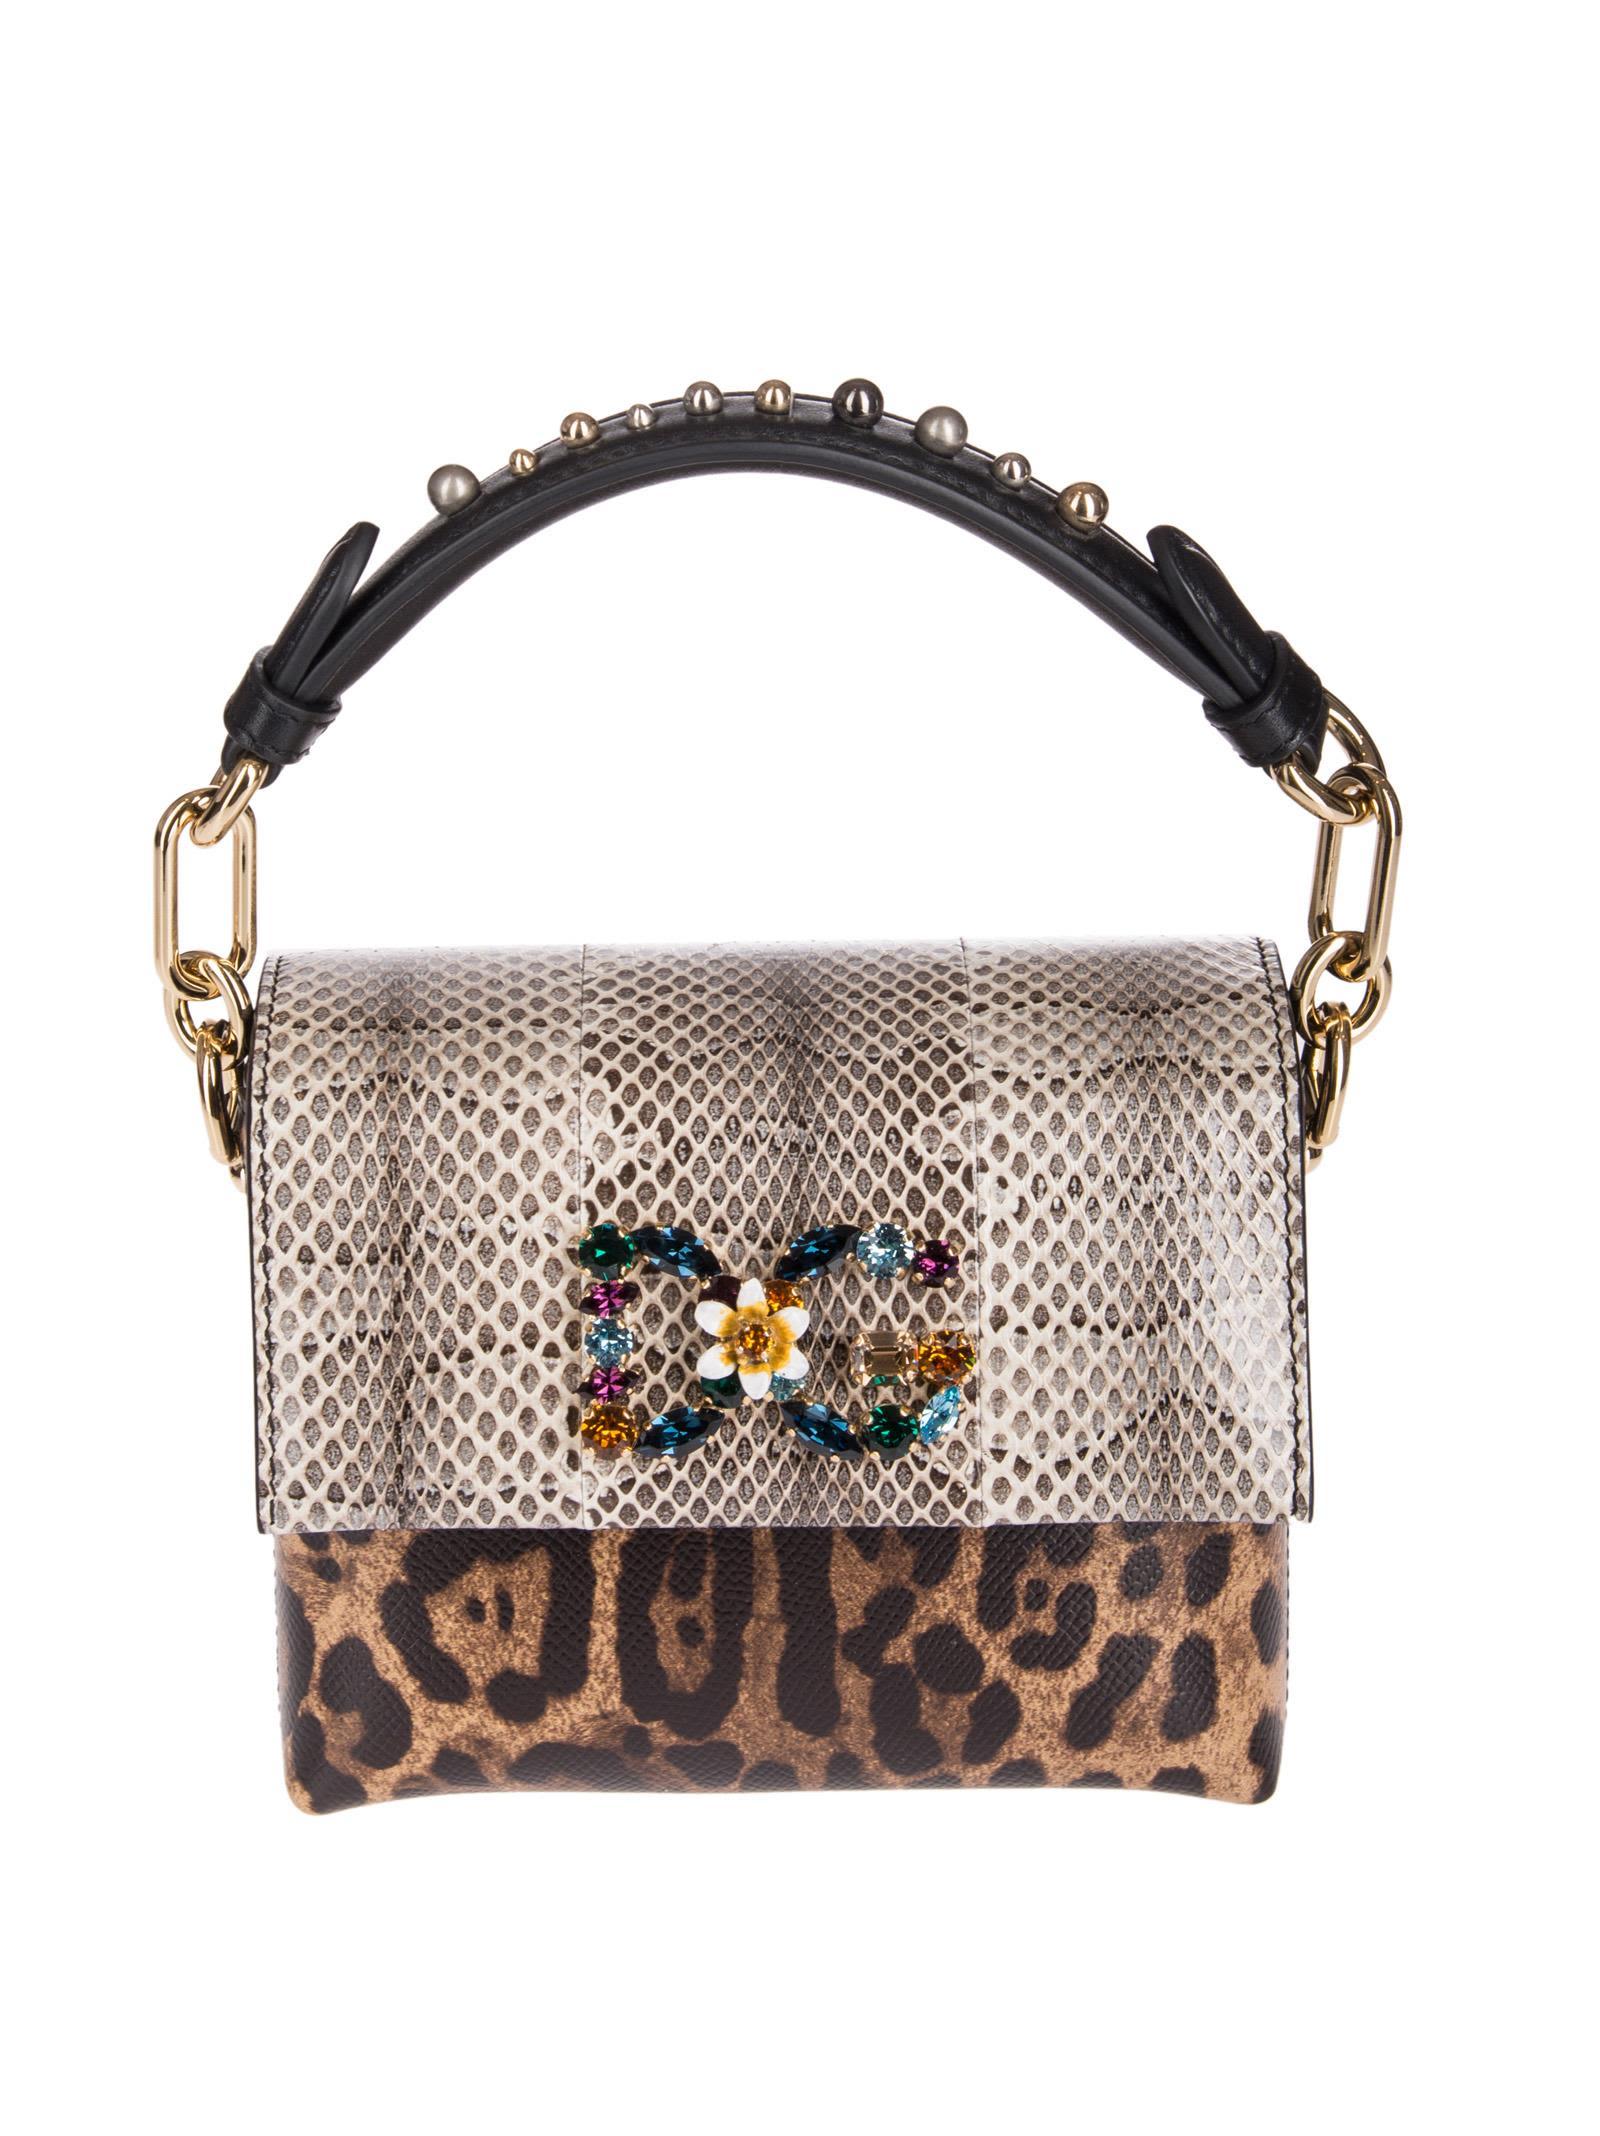 Dolce & Gabbana Dg Millennials Clutch Bag | ModeSens